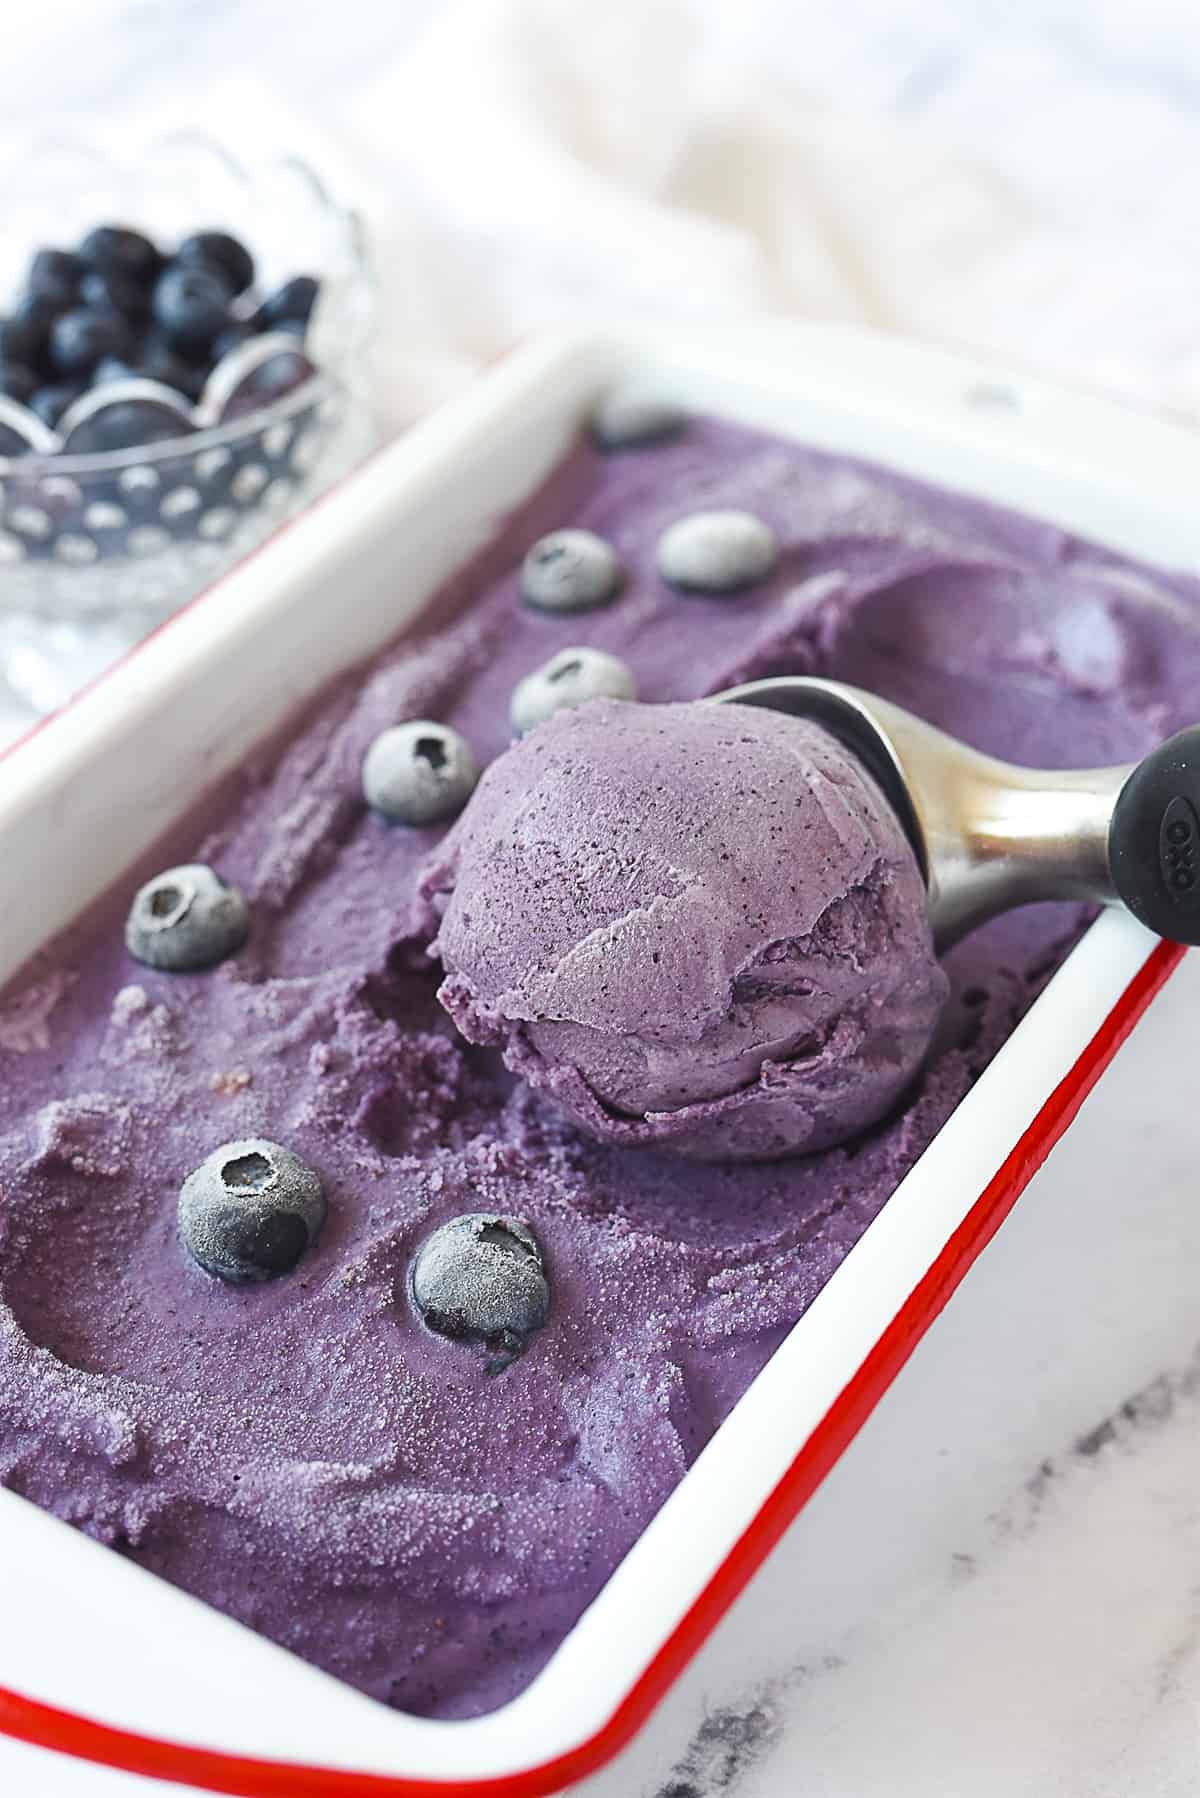 scoop of blueberry ice cream